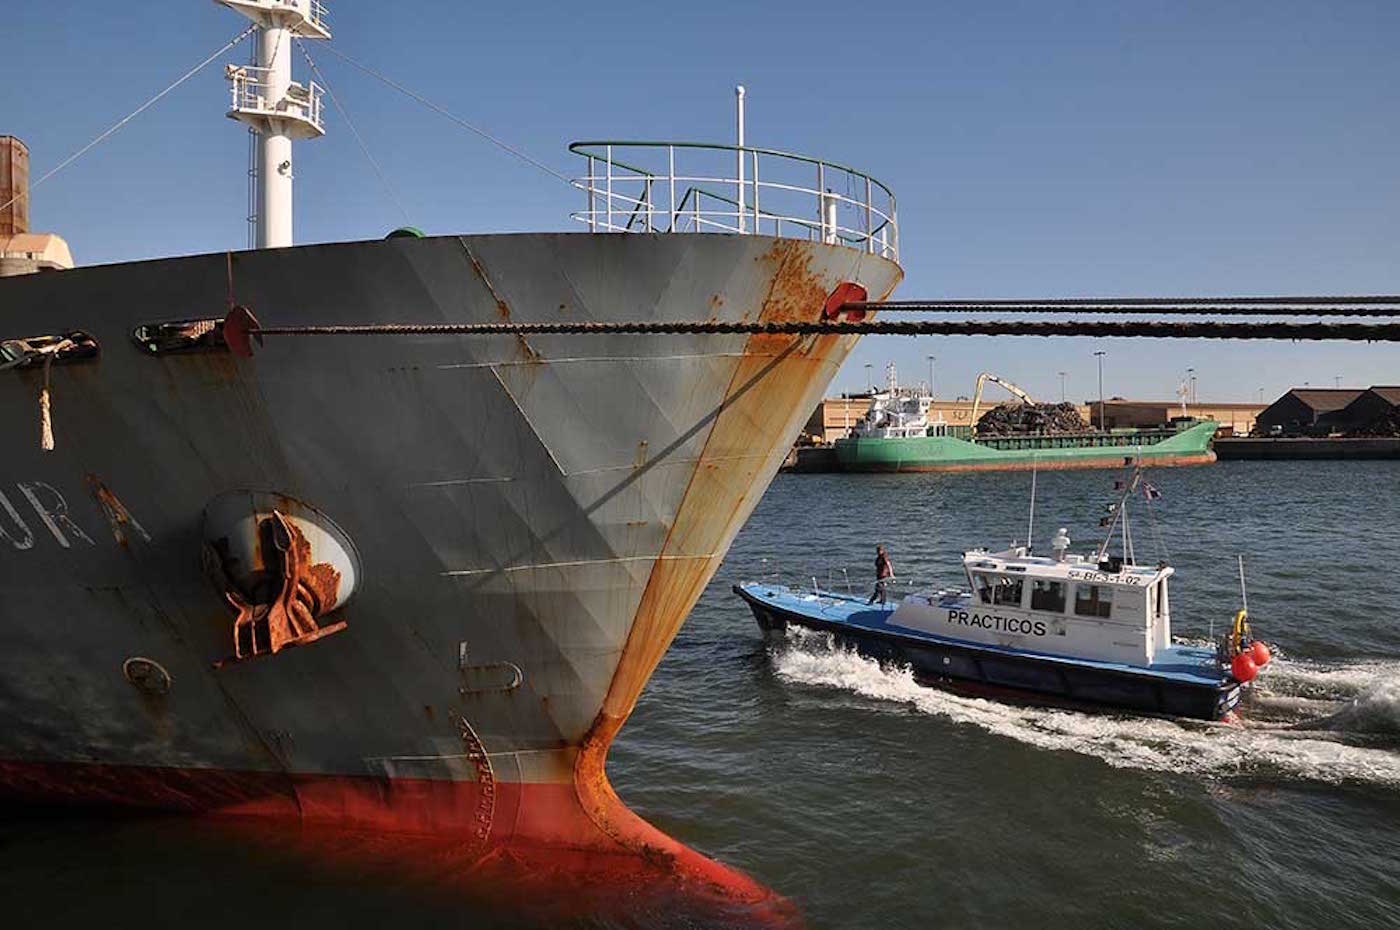 Marina Mercante convoca pruebas específicas de capacitación profesional para prácticos en cuatro puertos